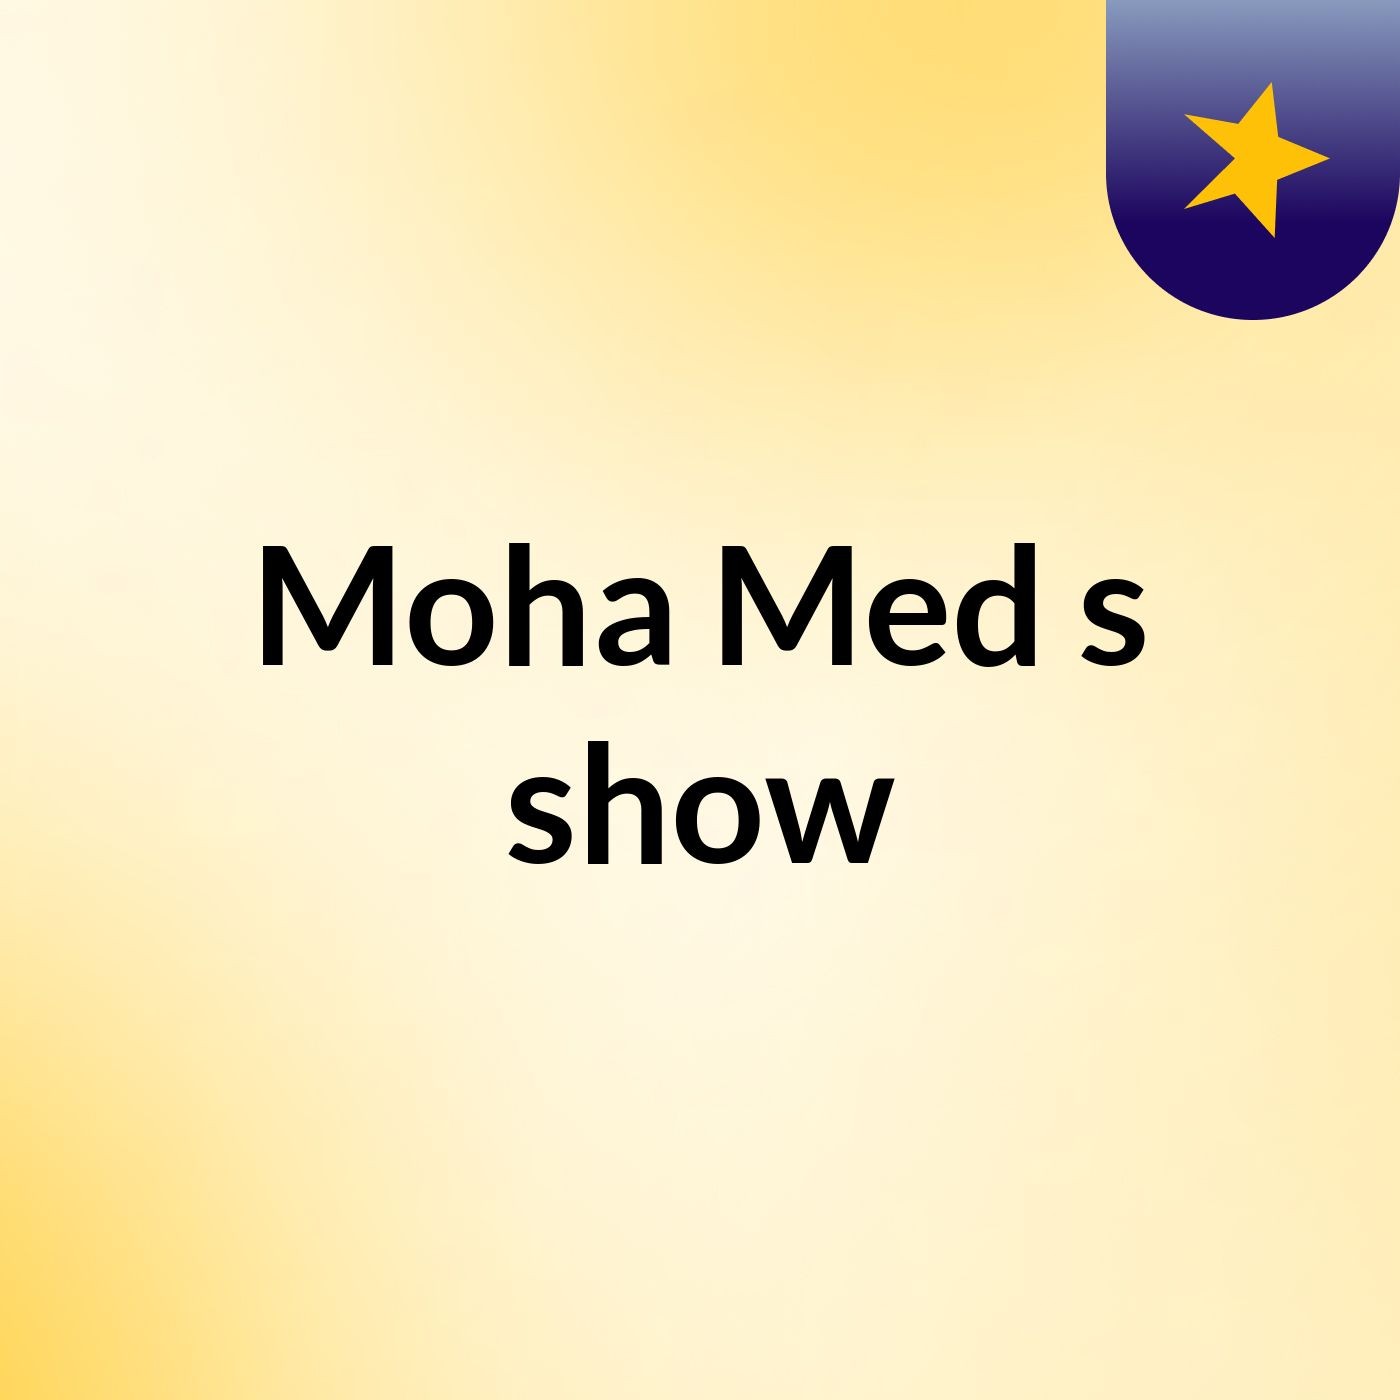 Moha Med's show